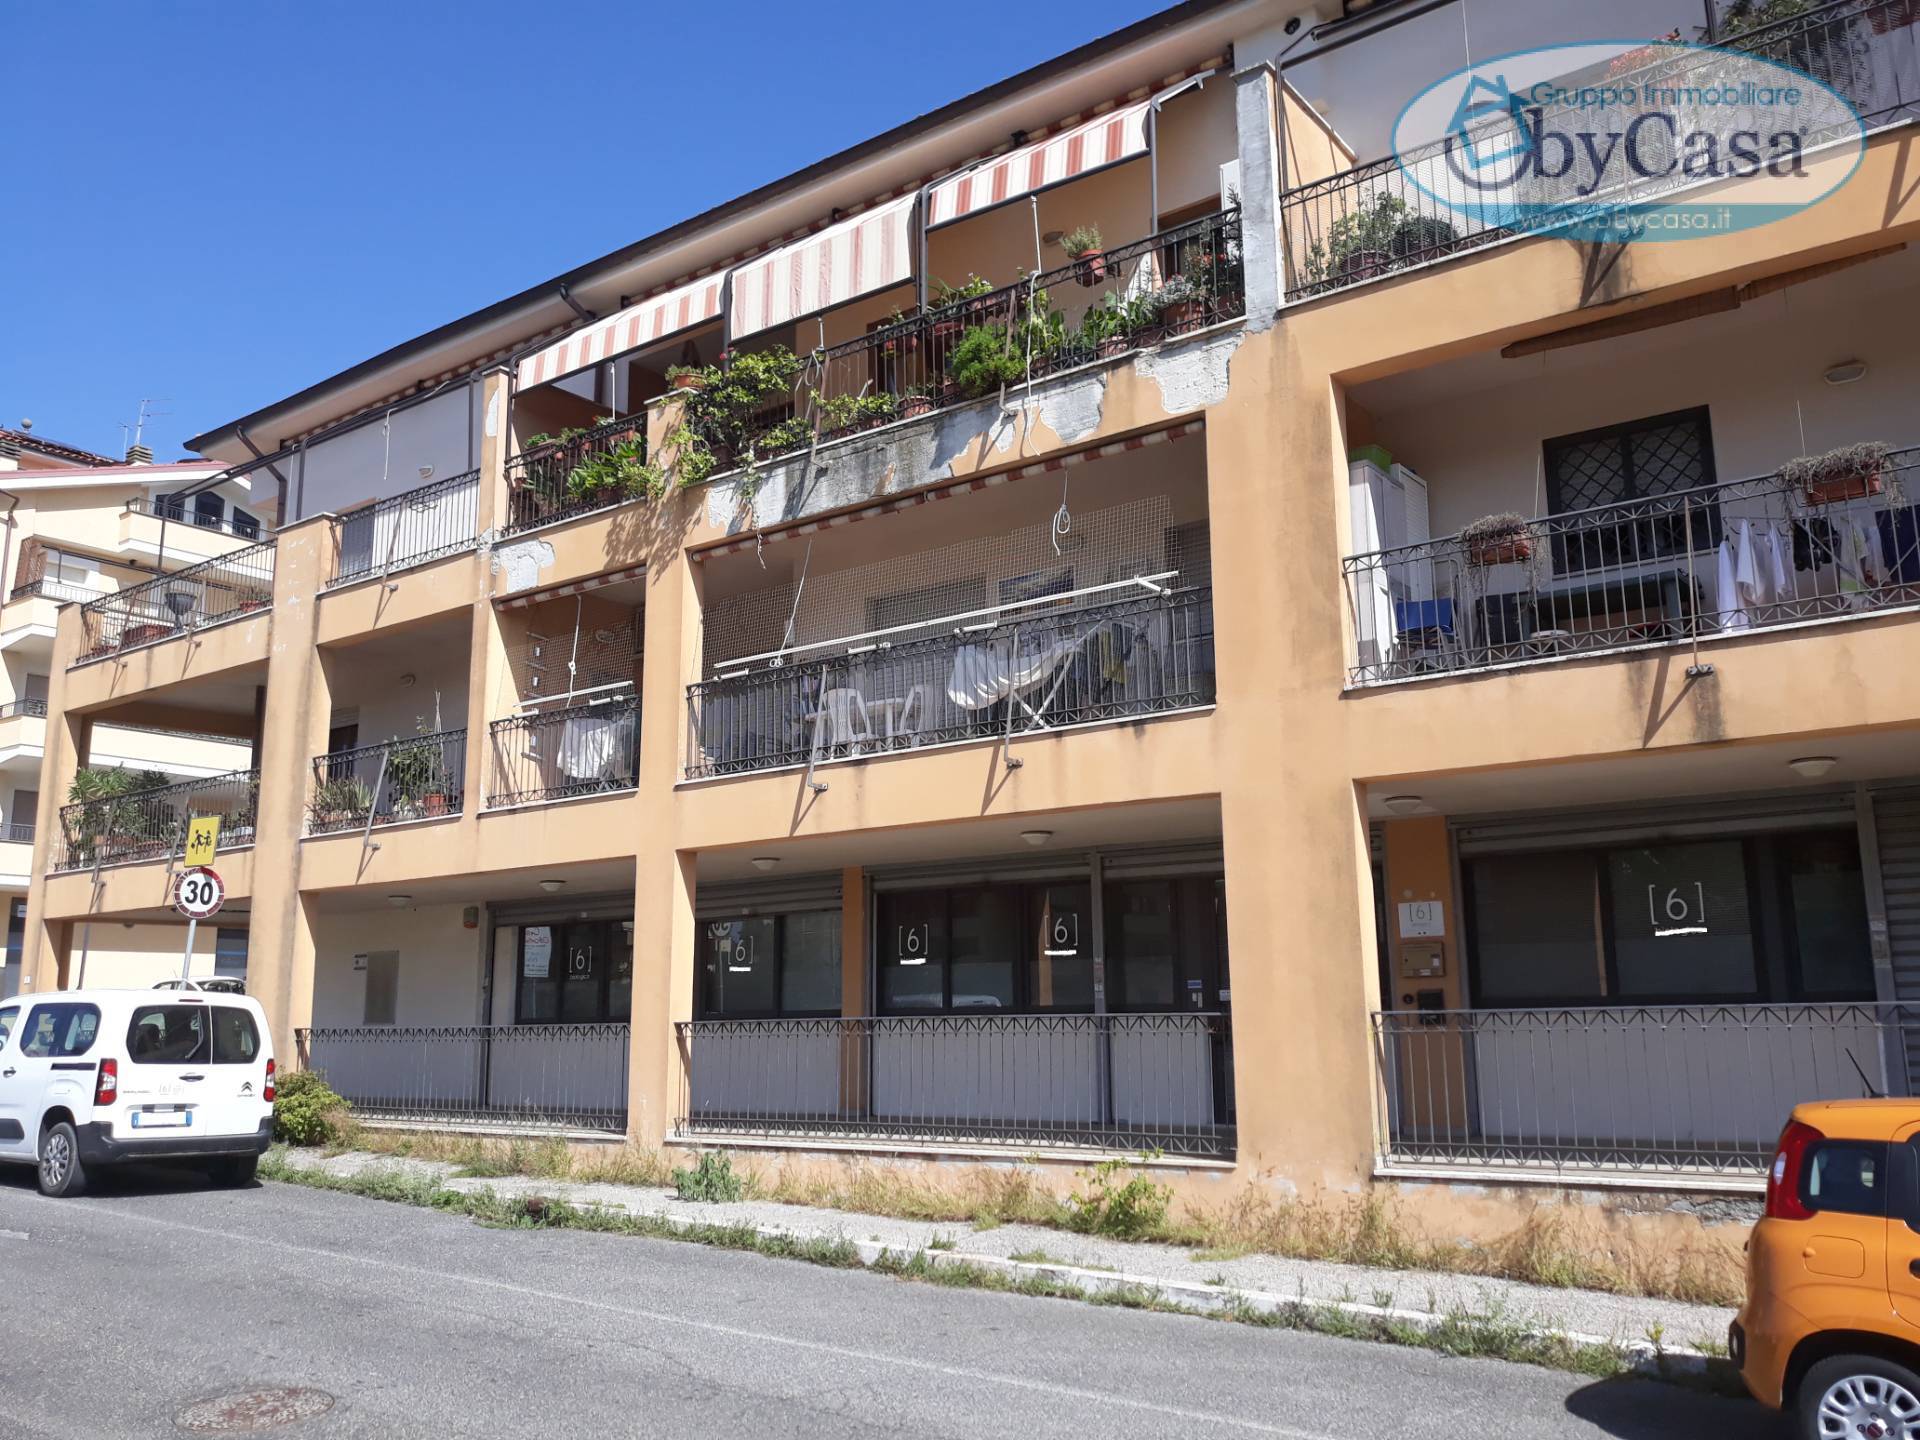 Fondo commerciale in affitto a Bracciano (RM)